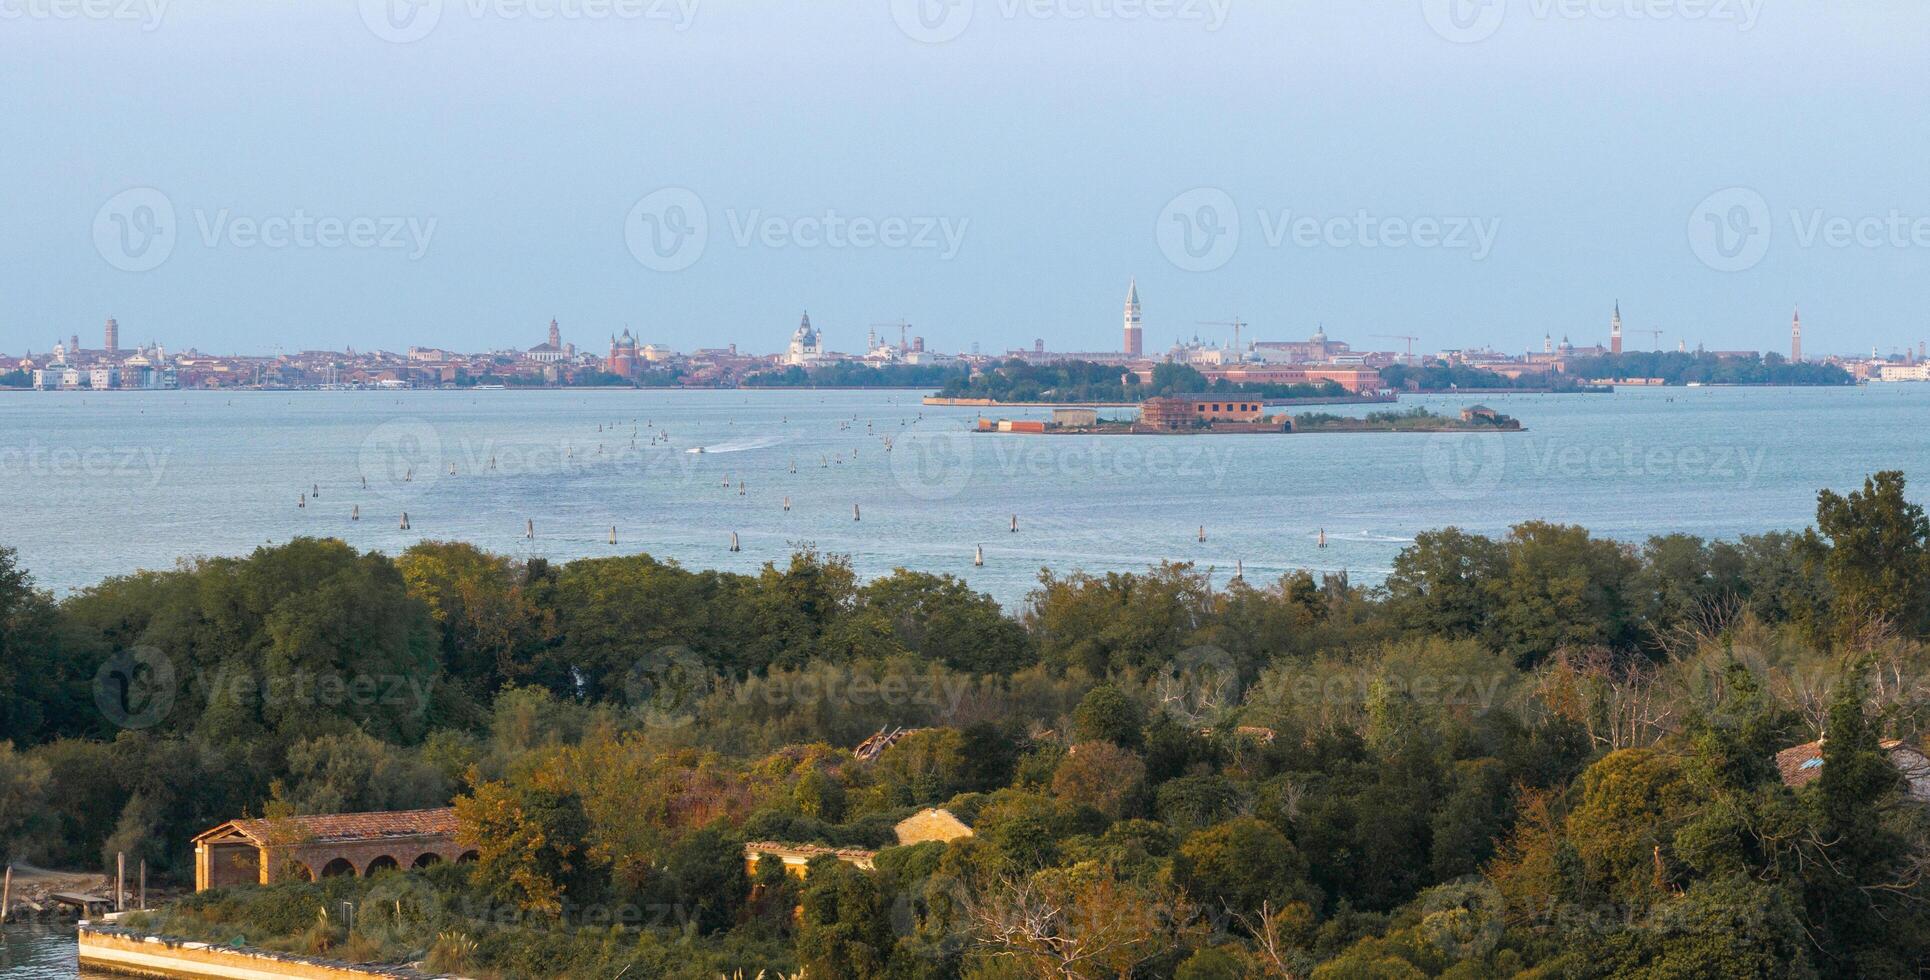 aéreo Visão do a atormentou fantasma ilha do poveglia dentro a veneziano lagoa foto